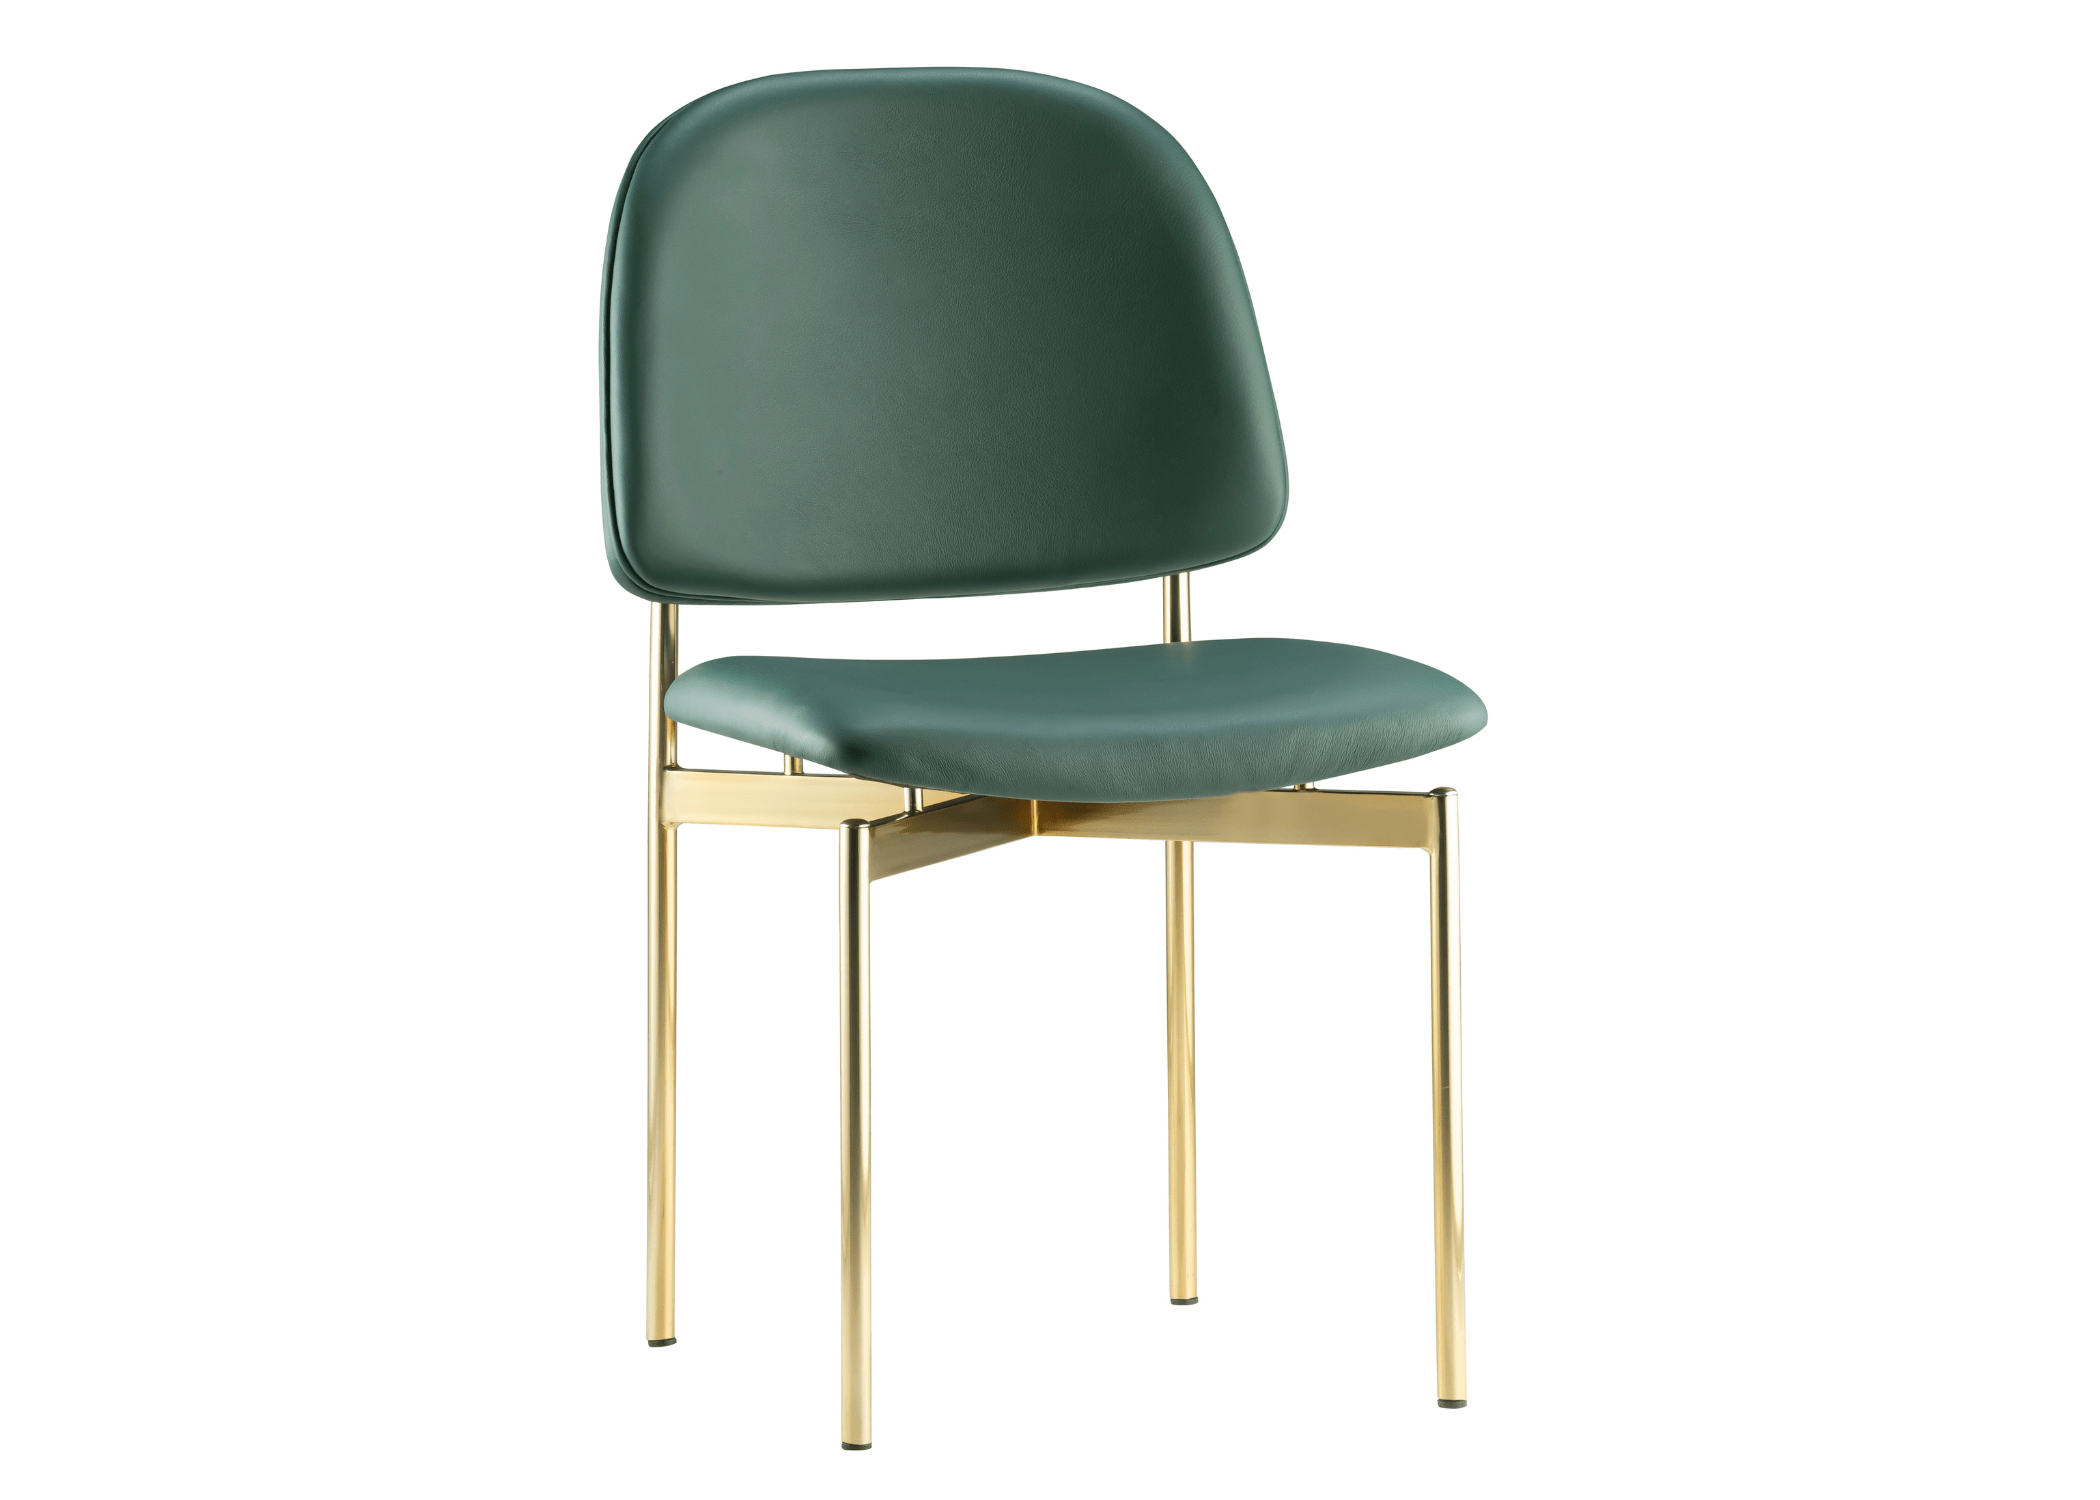 Design contemporâneo: simplicidade sofisticada na Cadeira Malta.